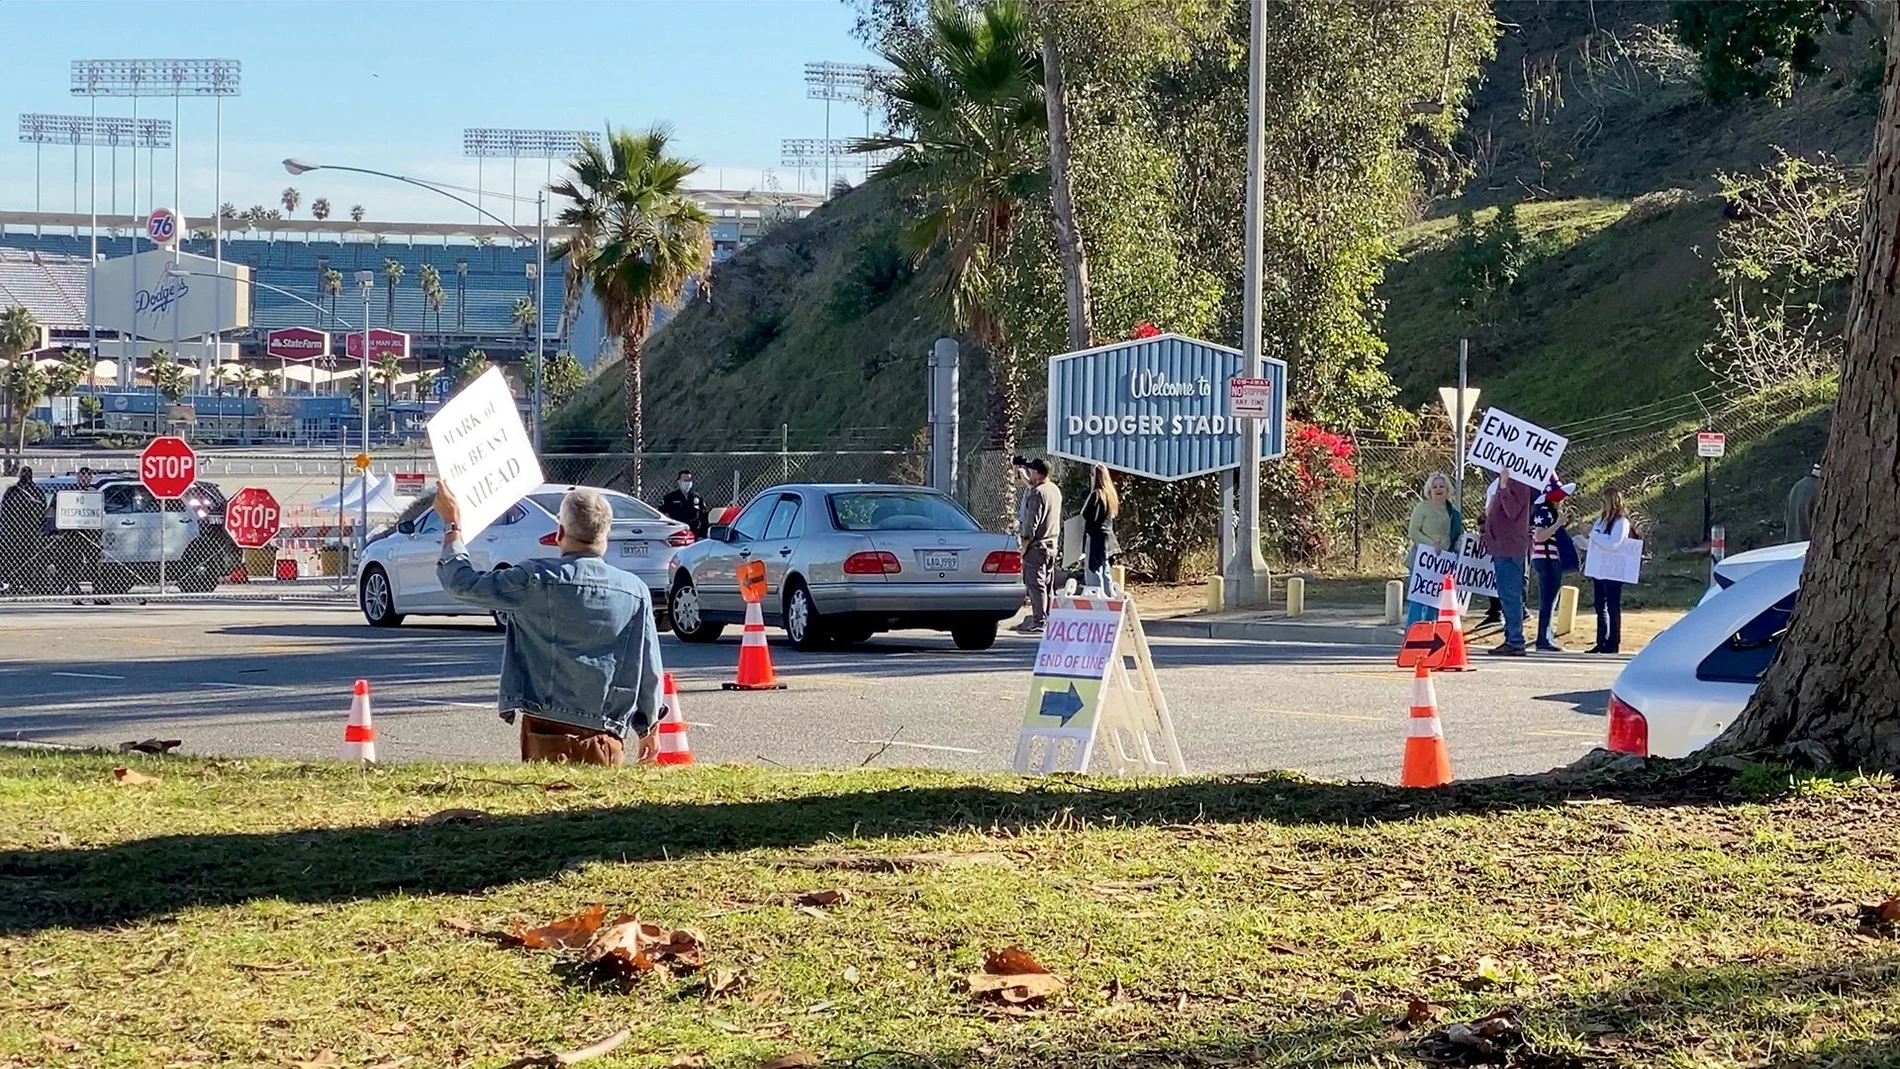 Manifestantes sosteniendo pancartas cerca de la entrada del centro de vacunación en el Estadio de los Dodgers en Los Ángeles. Fuente: @DAVEEDKAPOOR